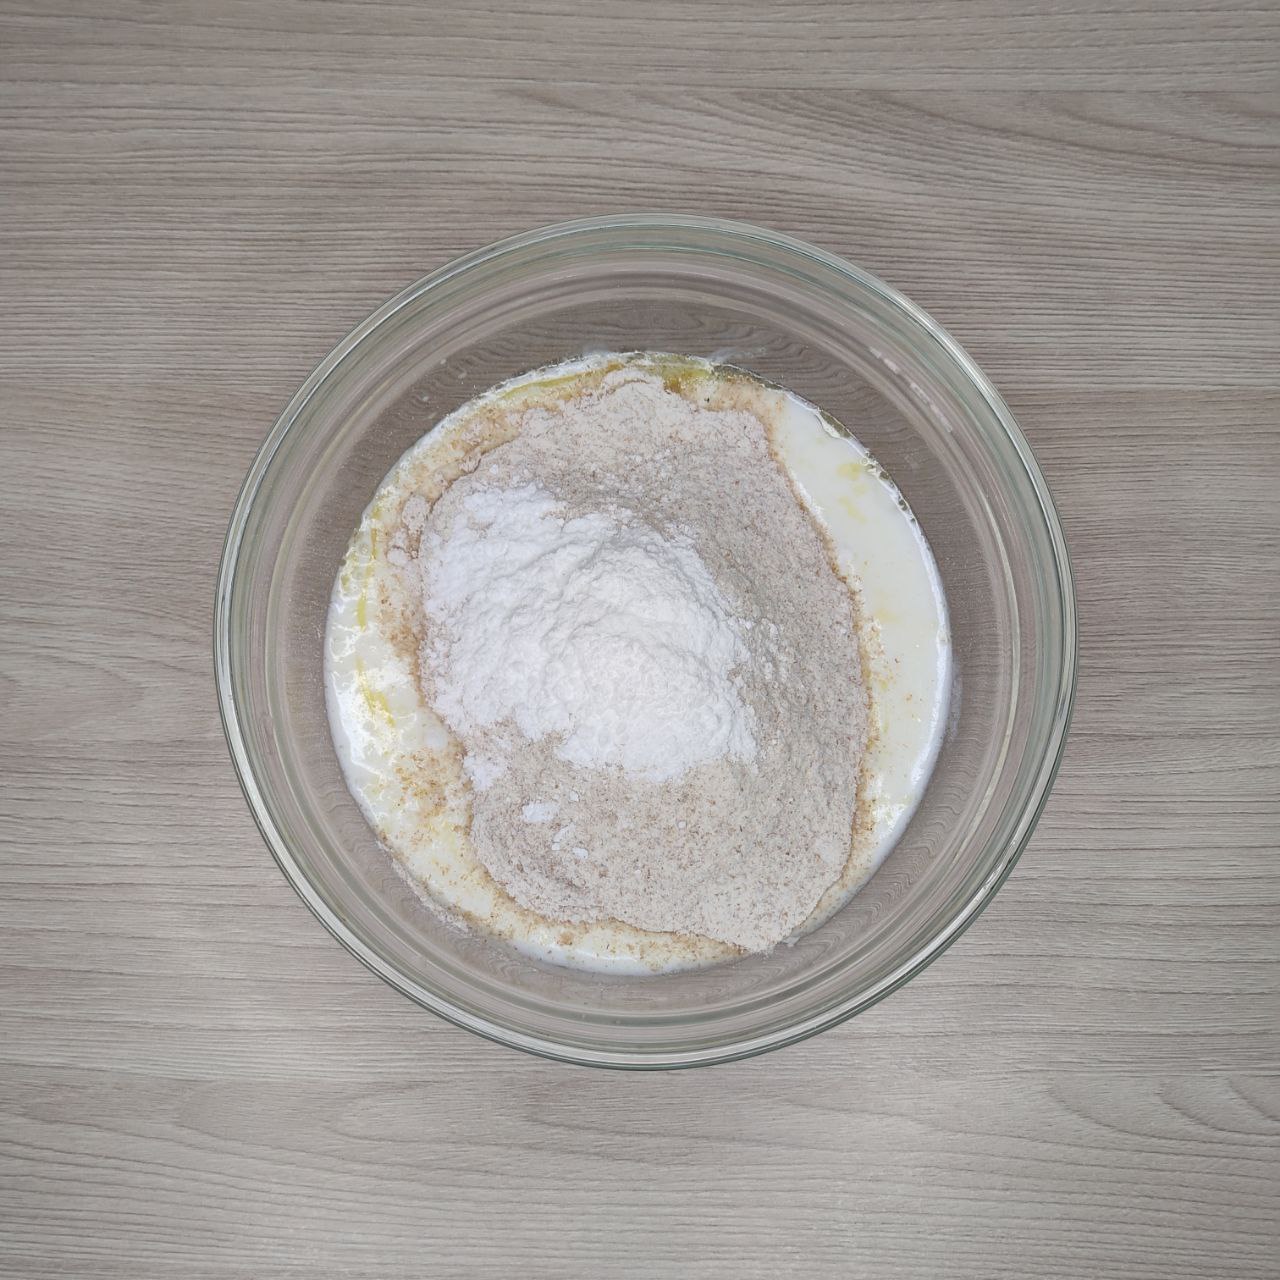 ПП цельнозерновые булочки "Синнабон" на кефире с рисовым кремом - 2 шаг